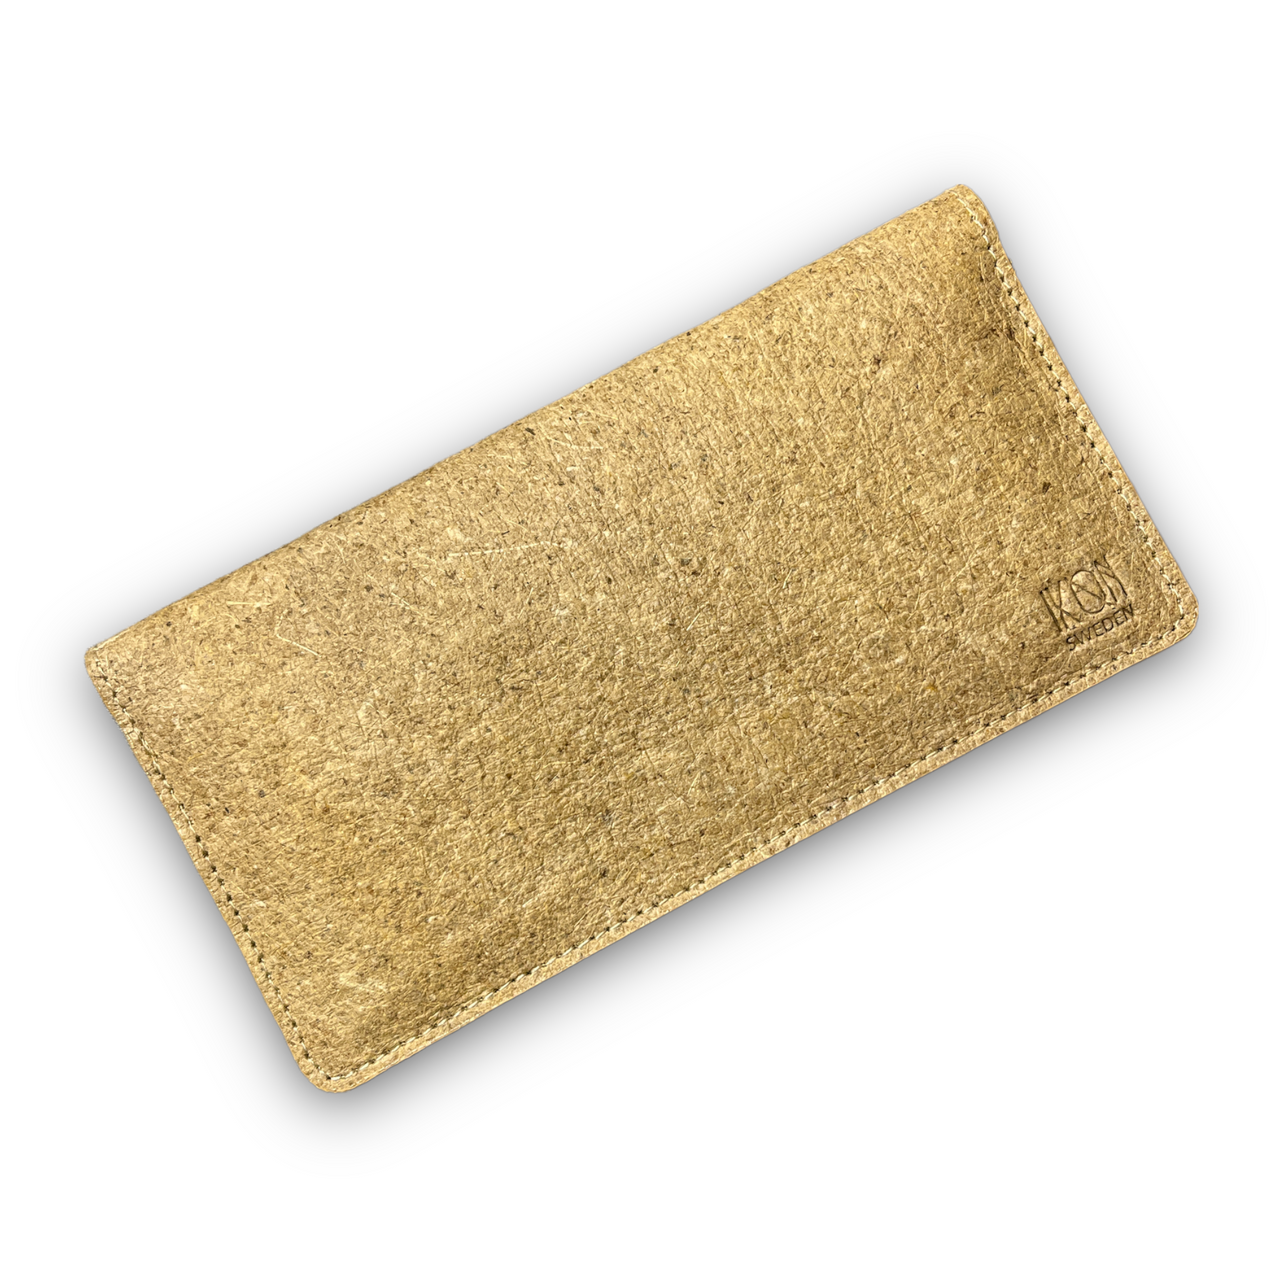 Coconut Leather Slim Wallet for Women - Beige